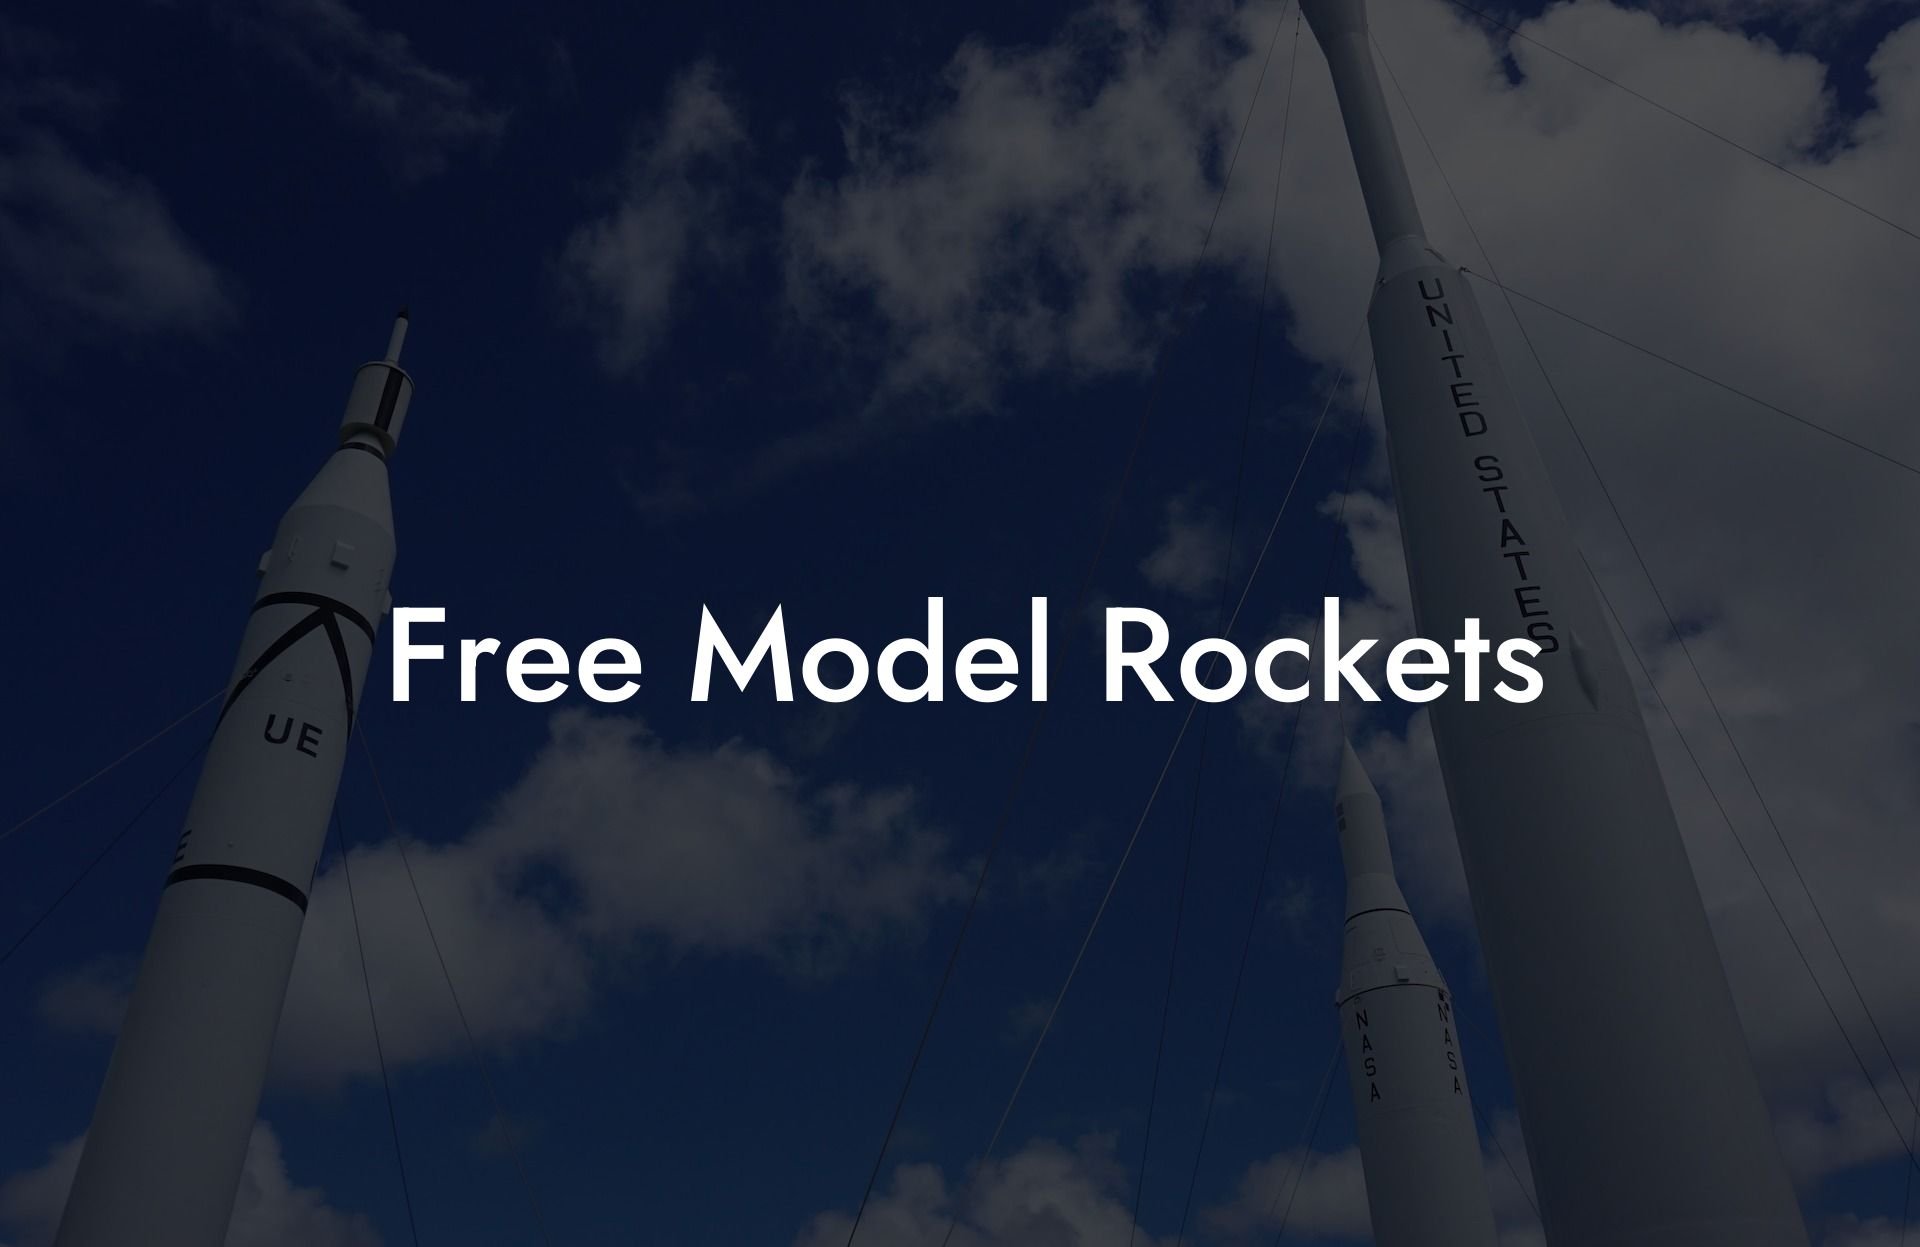 Free Model Rockets